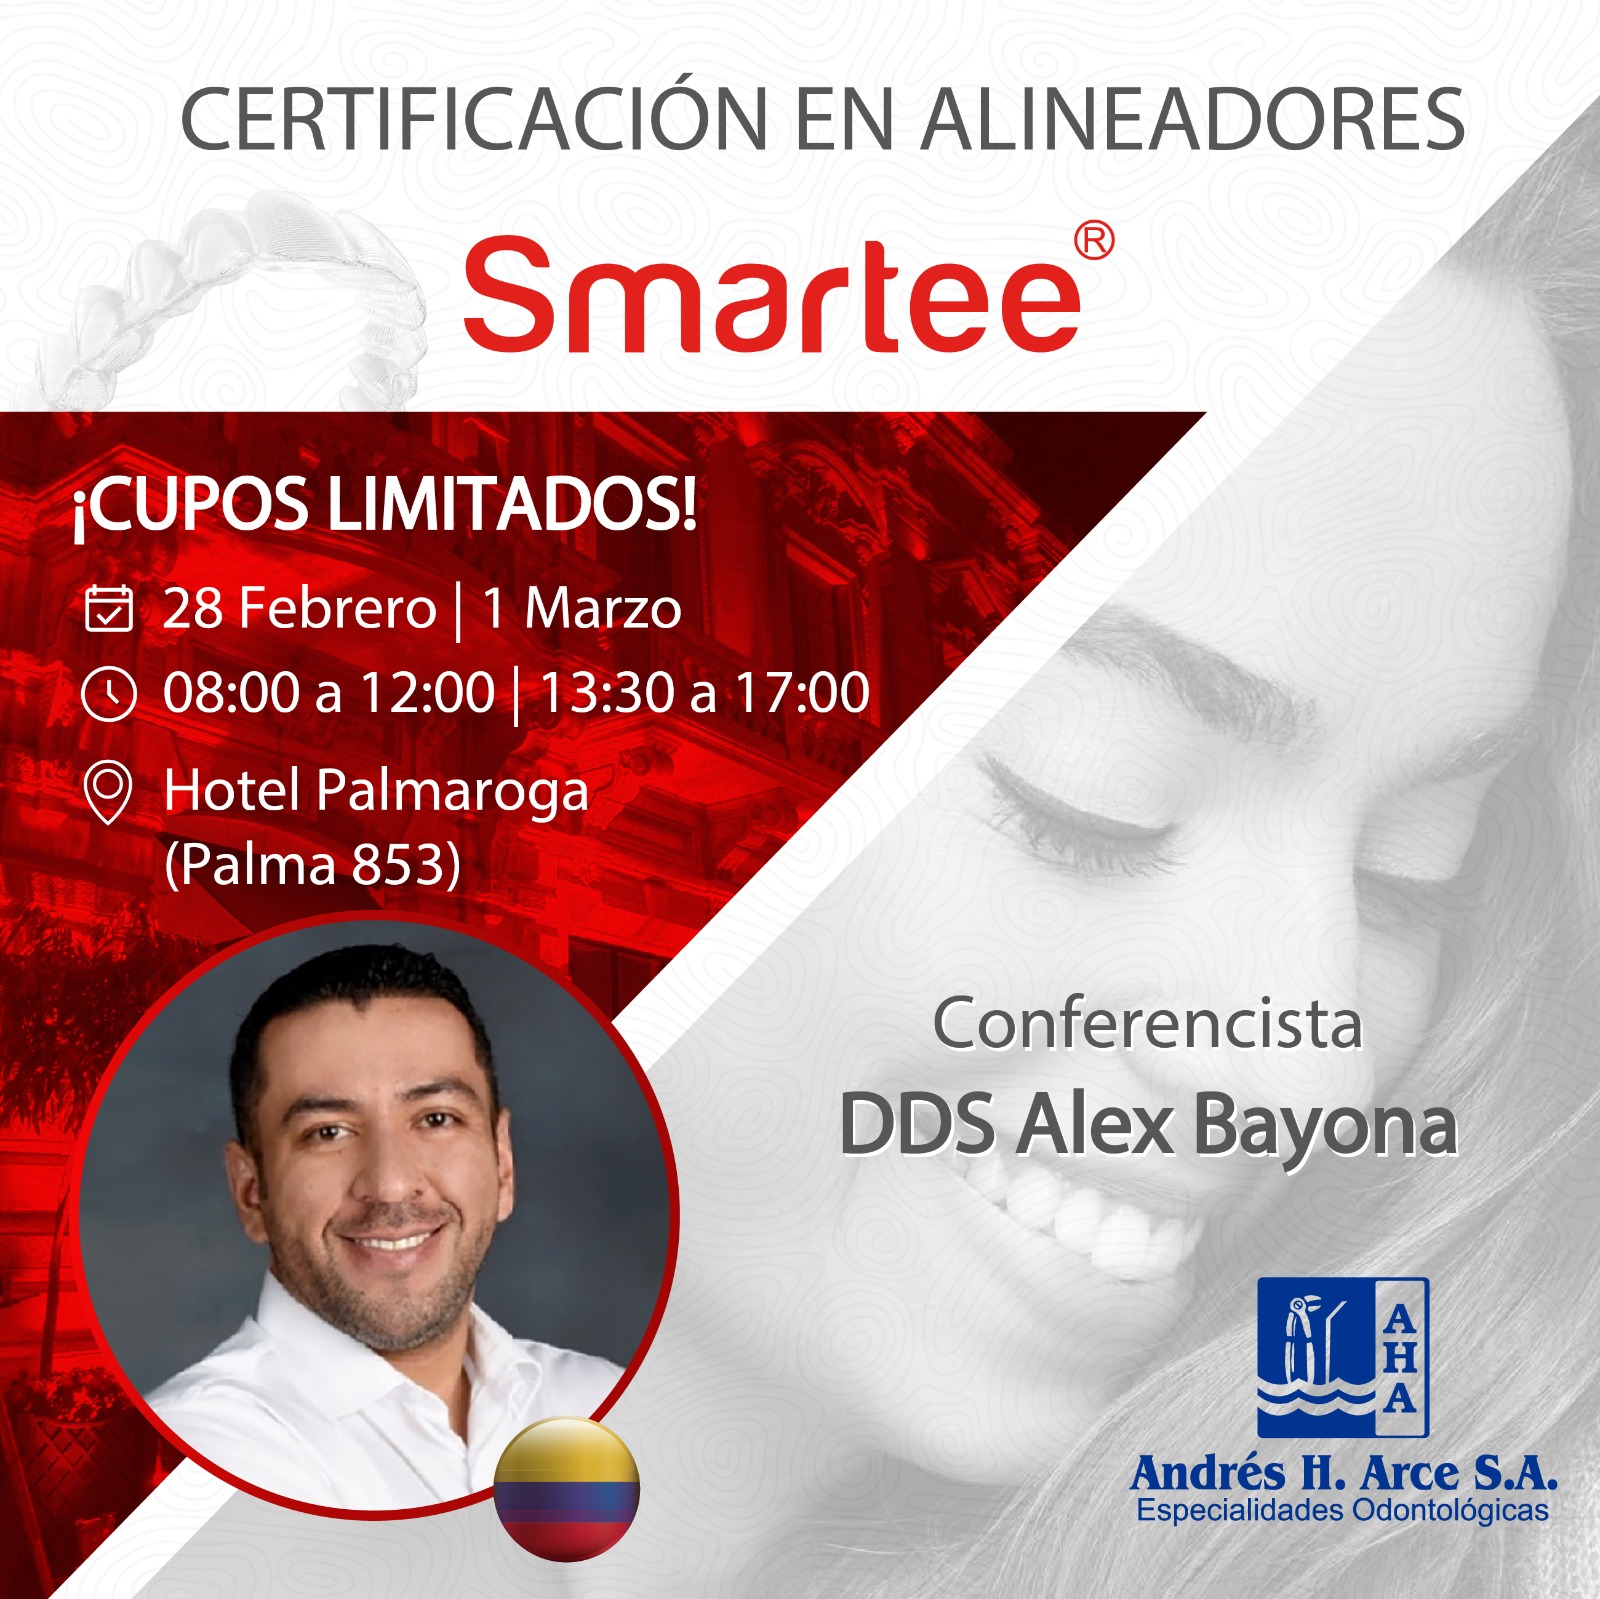 Certificación en Alineadores Smartee